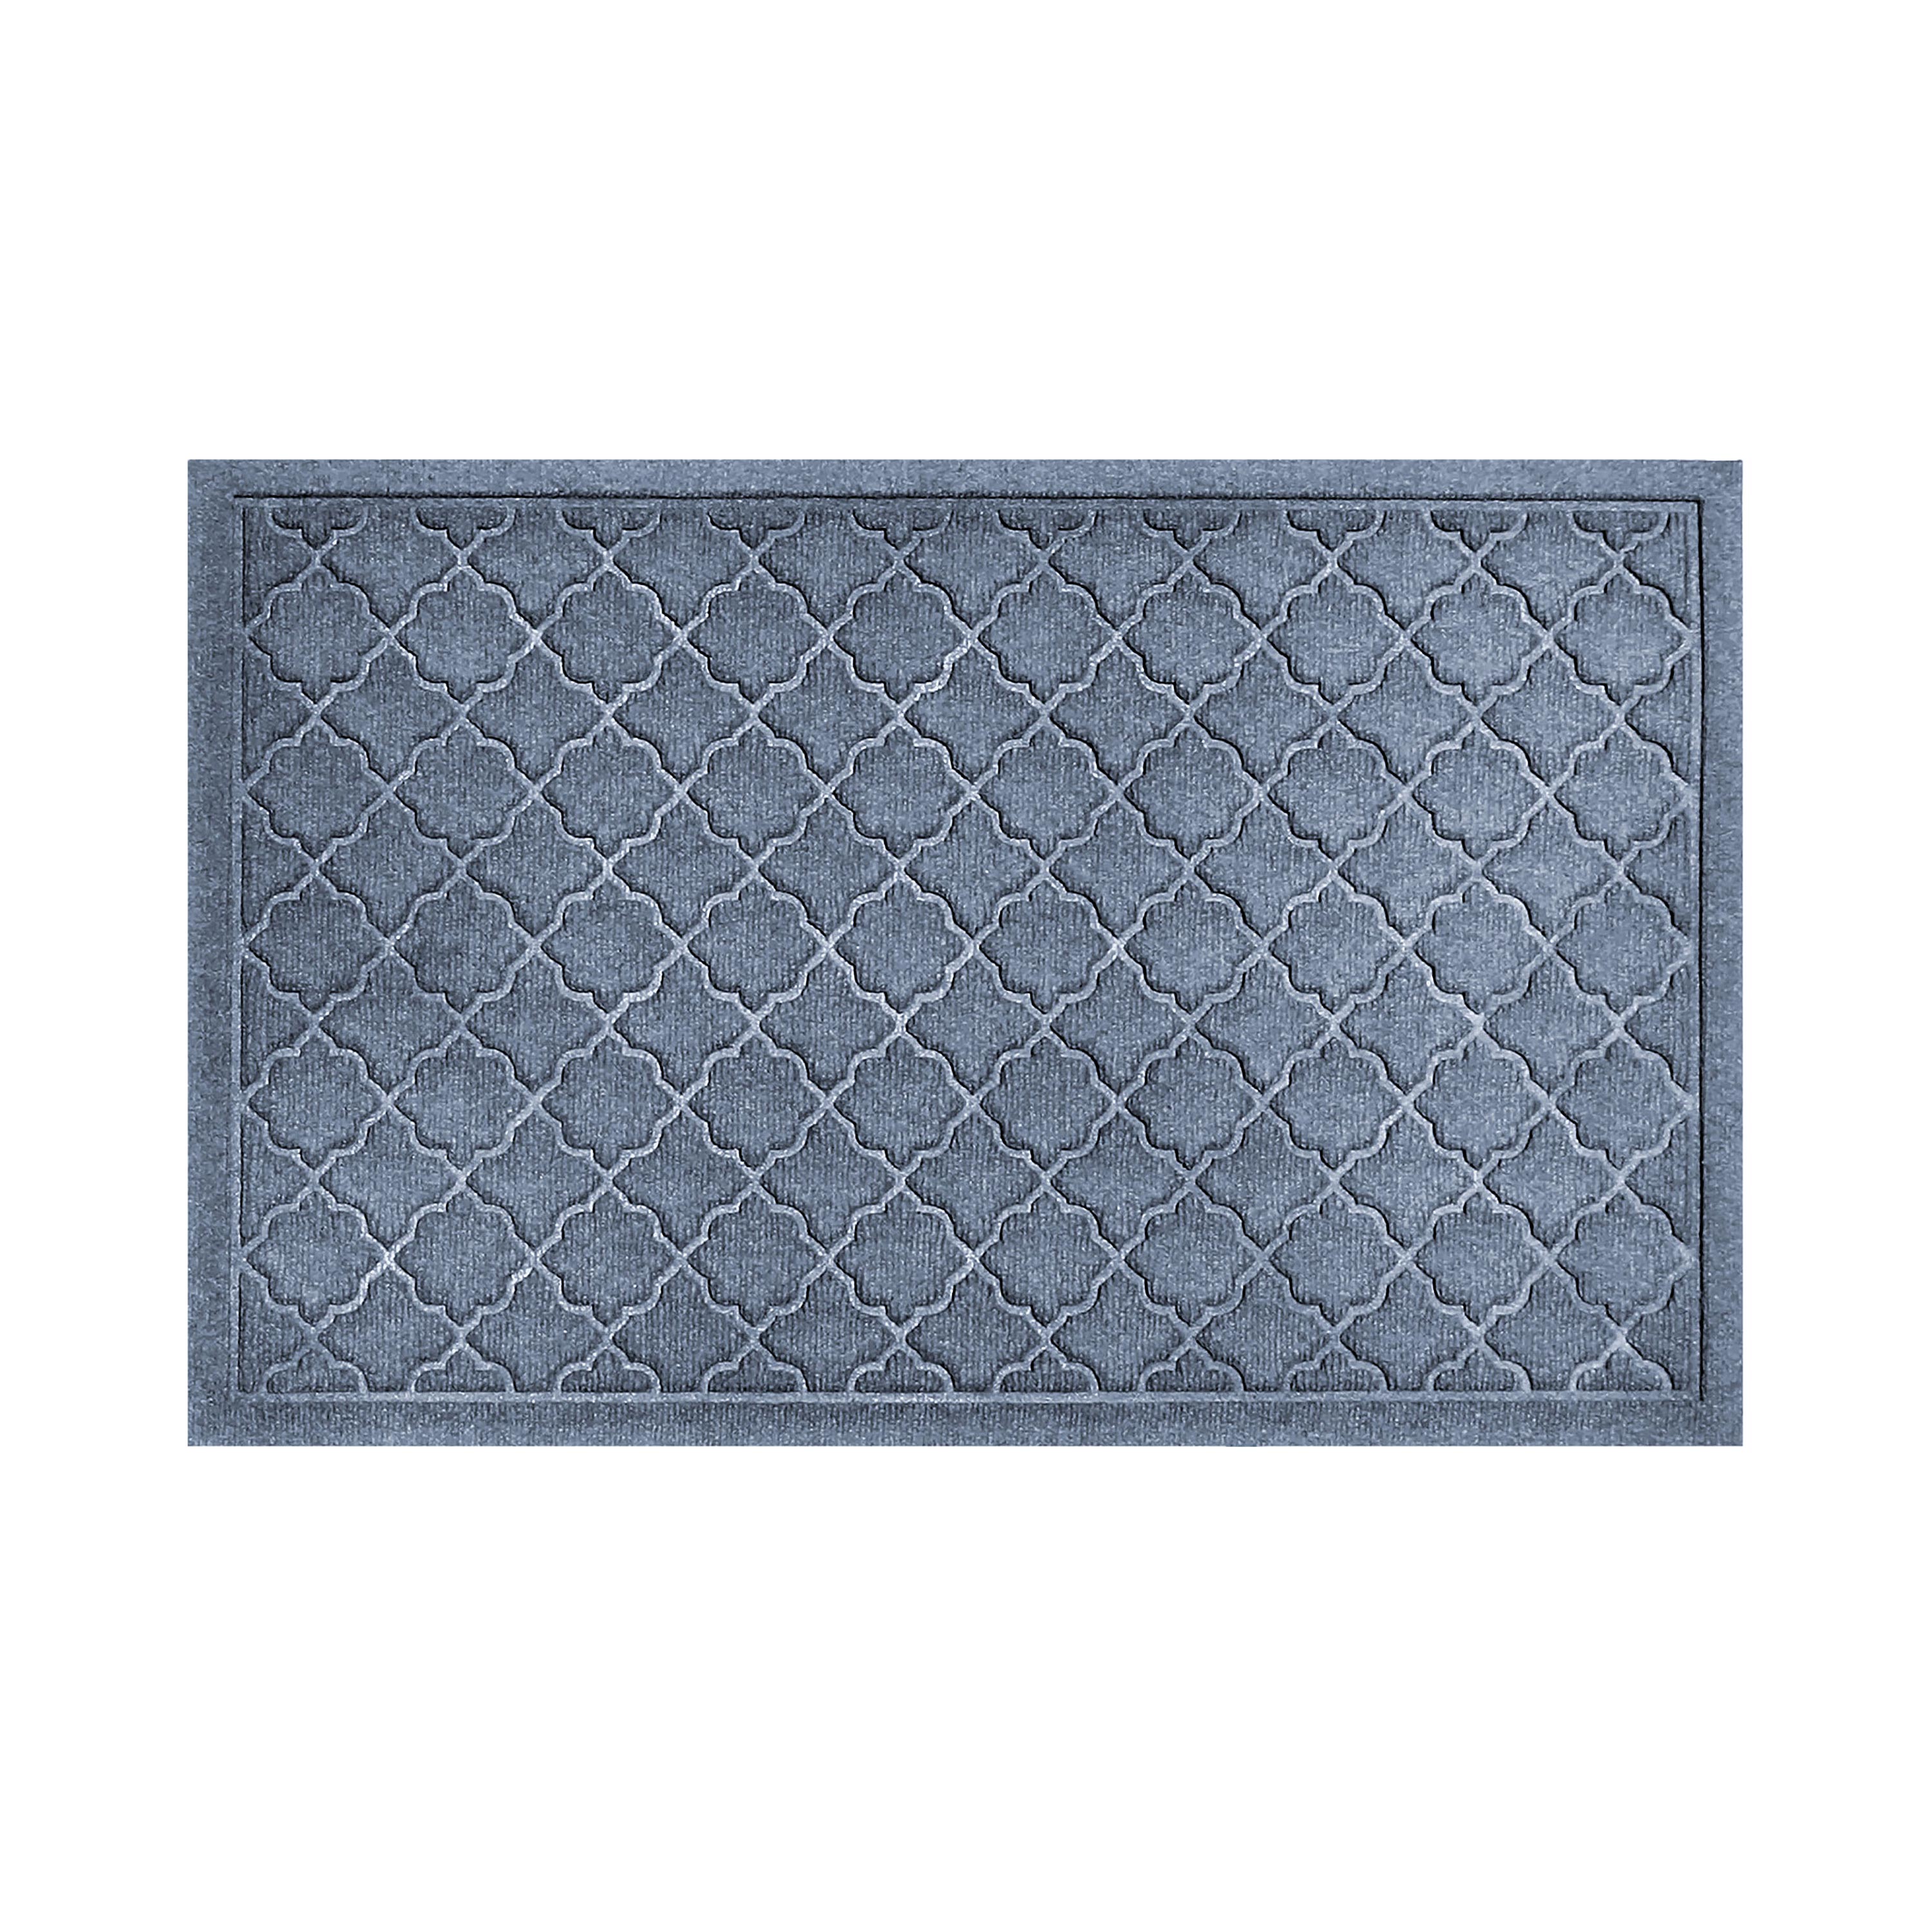 Waterhog Indoor/Outdoor Geometric Doormat, 34" x 52" - Bluestone